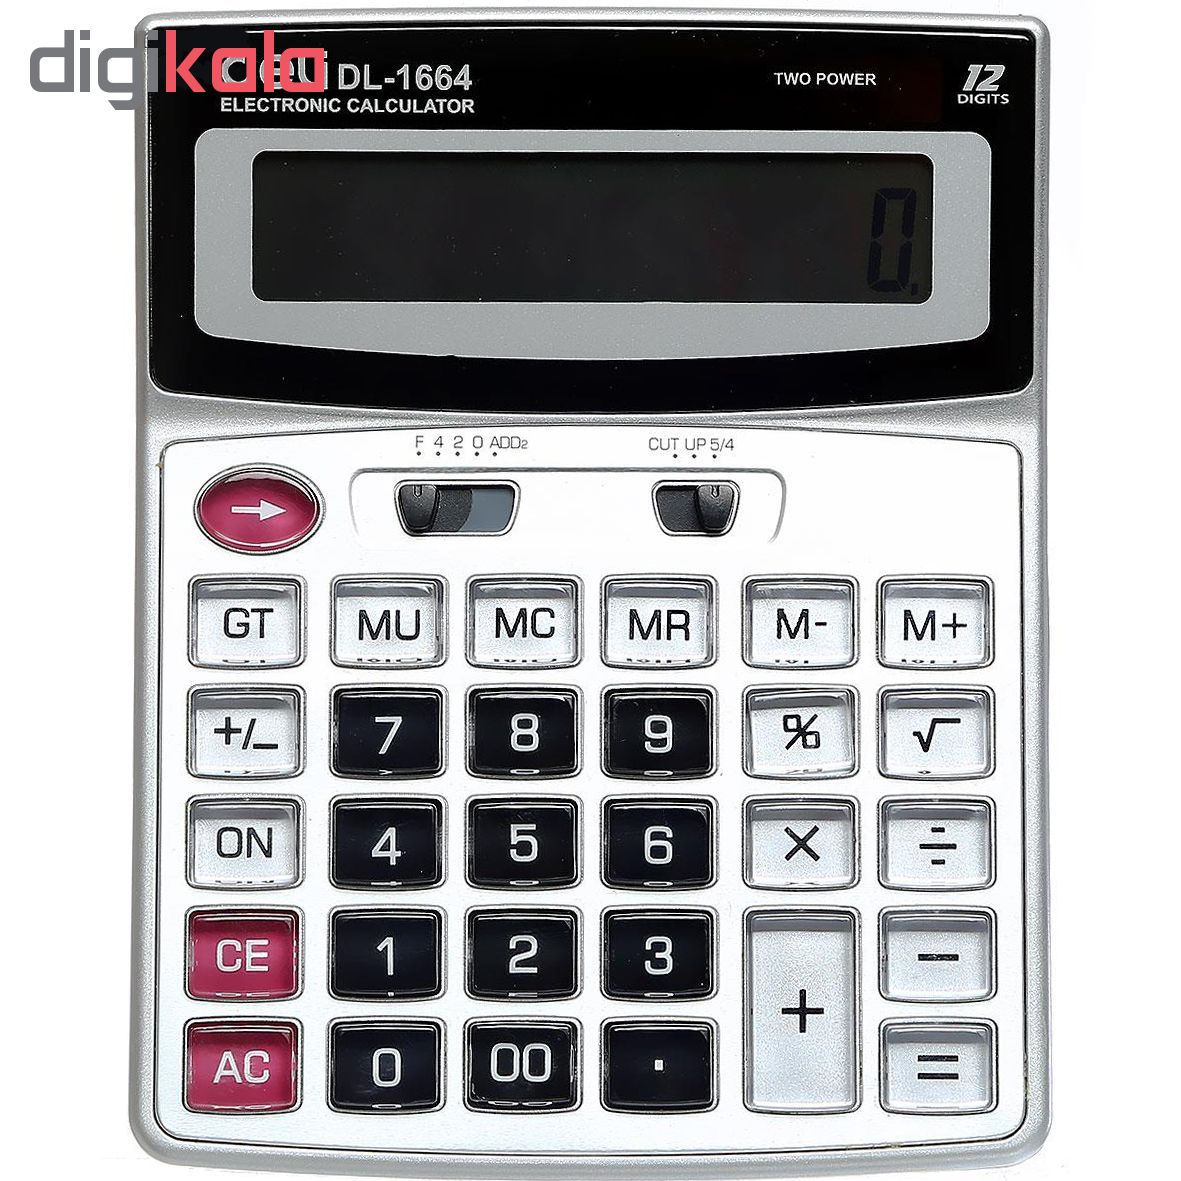 ماشین حساب دلی مدل DL-1664